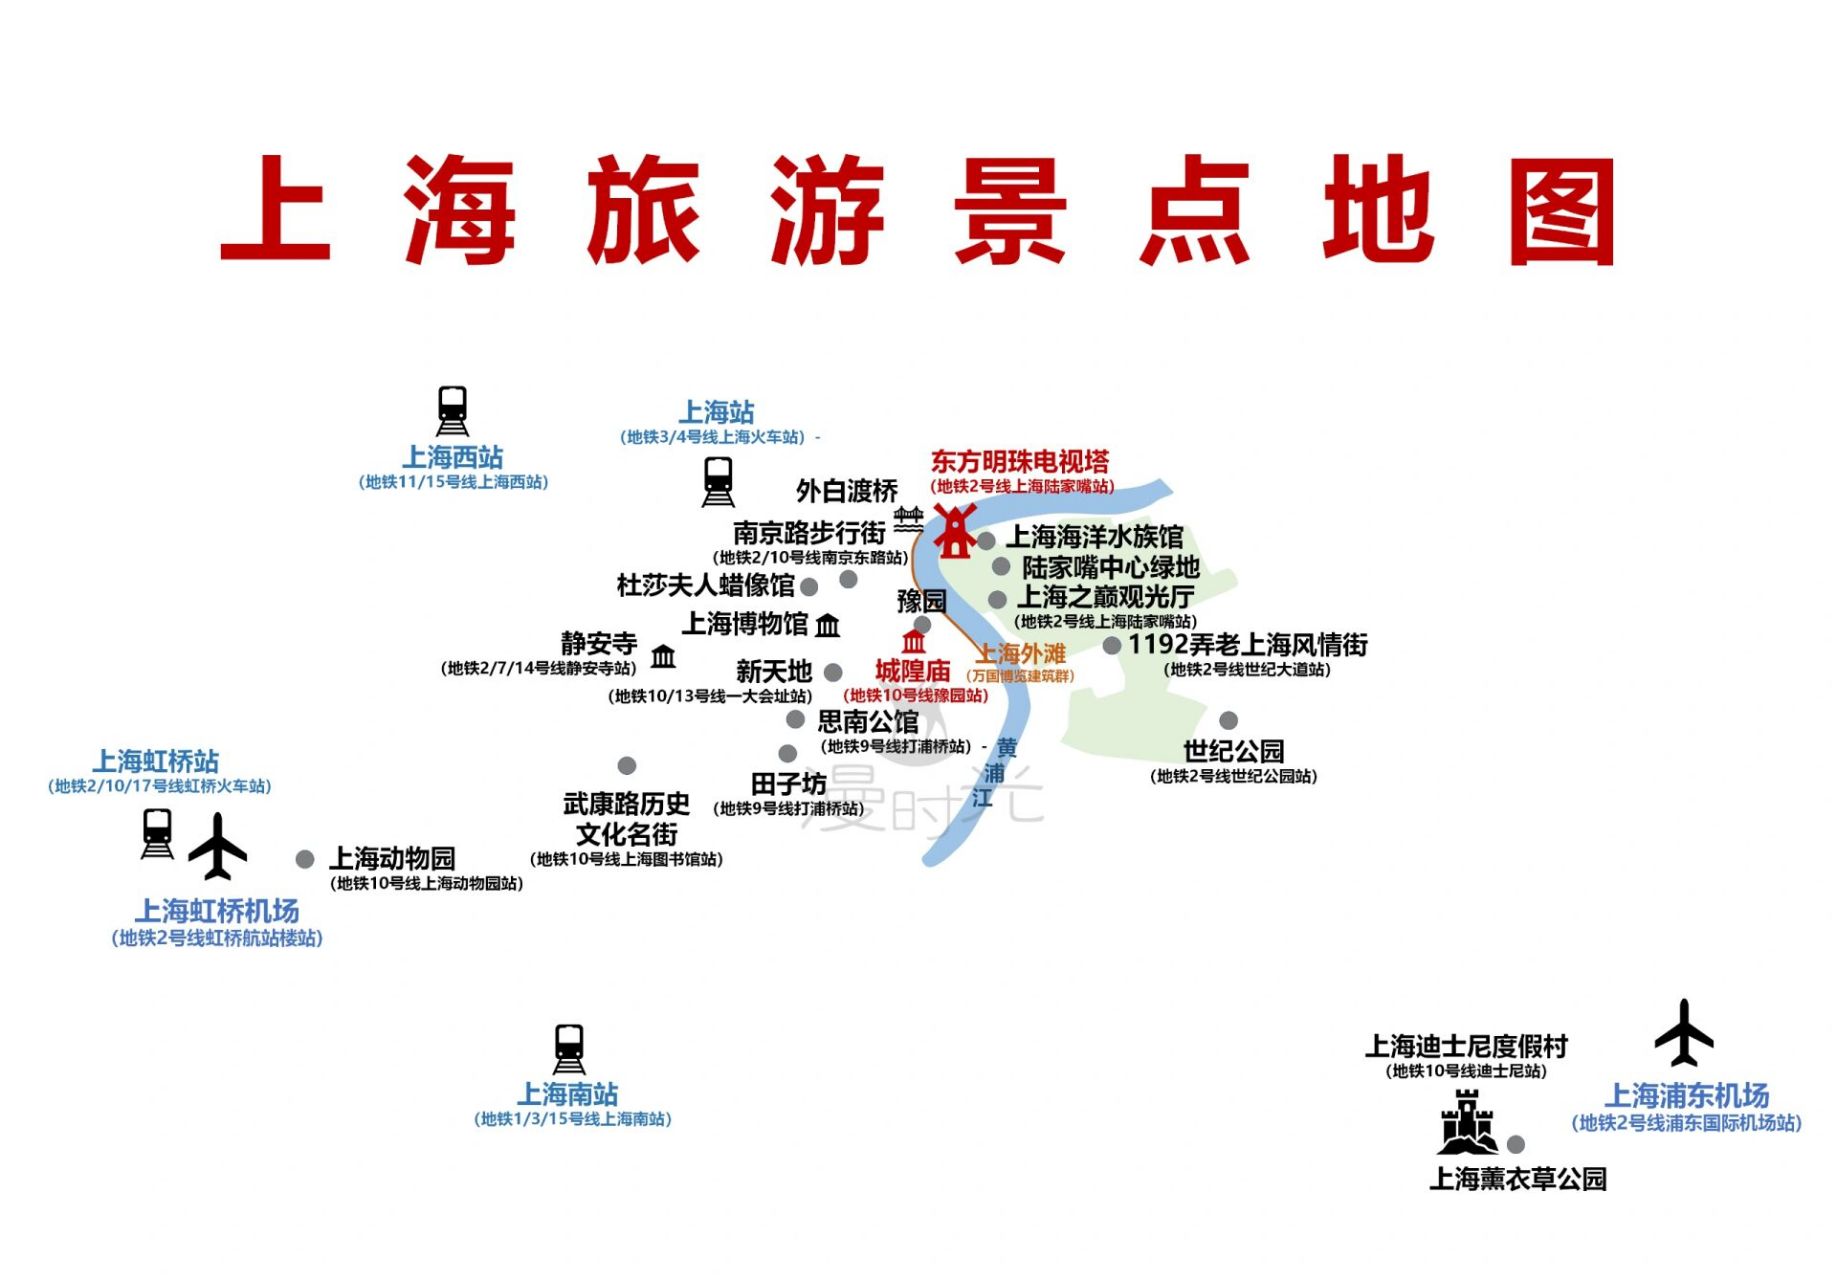 上海旅游景点地图         最近很多宝贝私信我问旅游地图,交通攻略